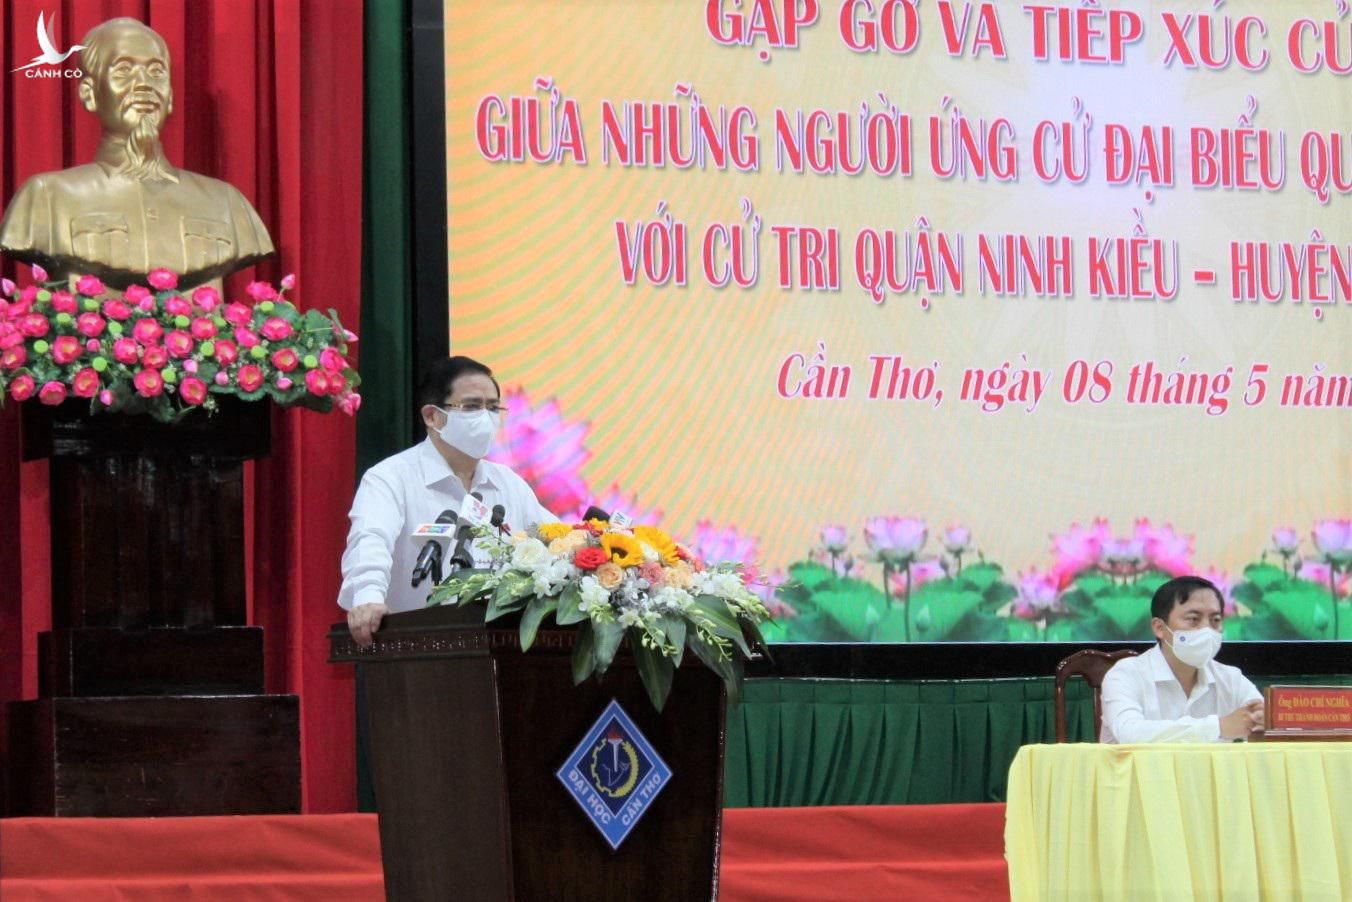 Ứng cử viên ĐBQH, Thủ tướng Phạm Minh Chính trình bày chương trình hành động tại buổi tiếp xúc cử tri ở Cần Thơ sáng 8/5.